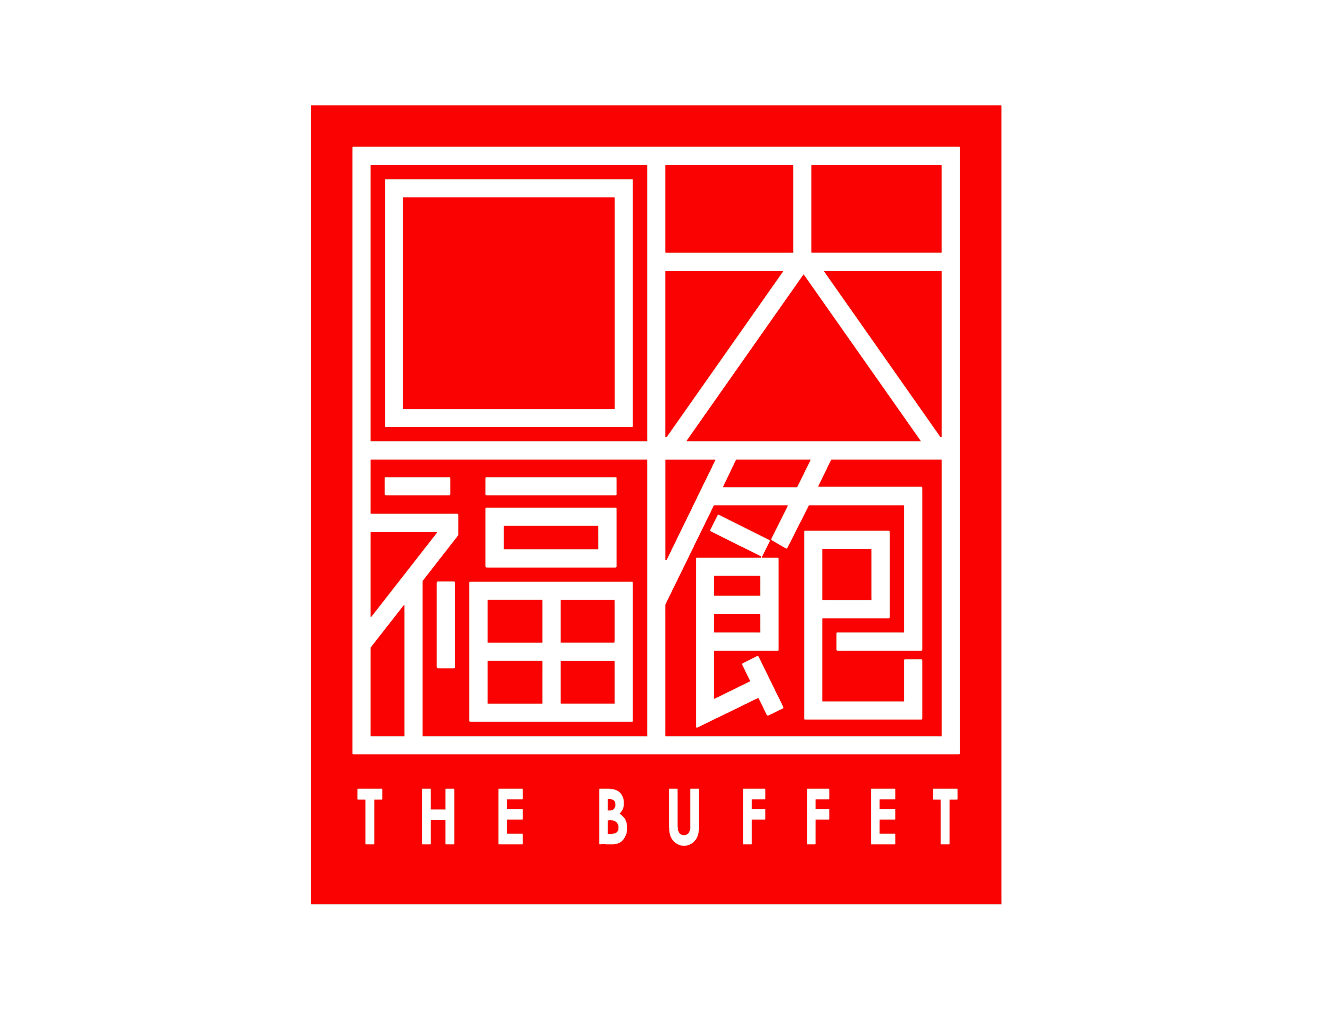 Bffet Logo - Home - The Buffet